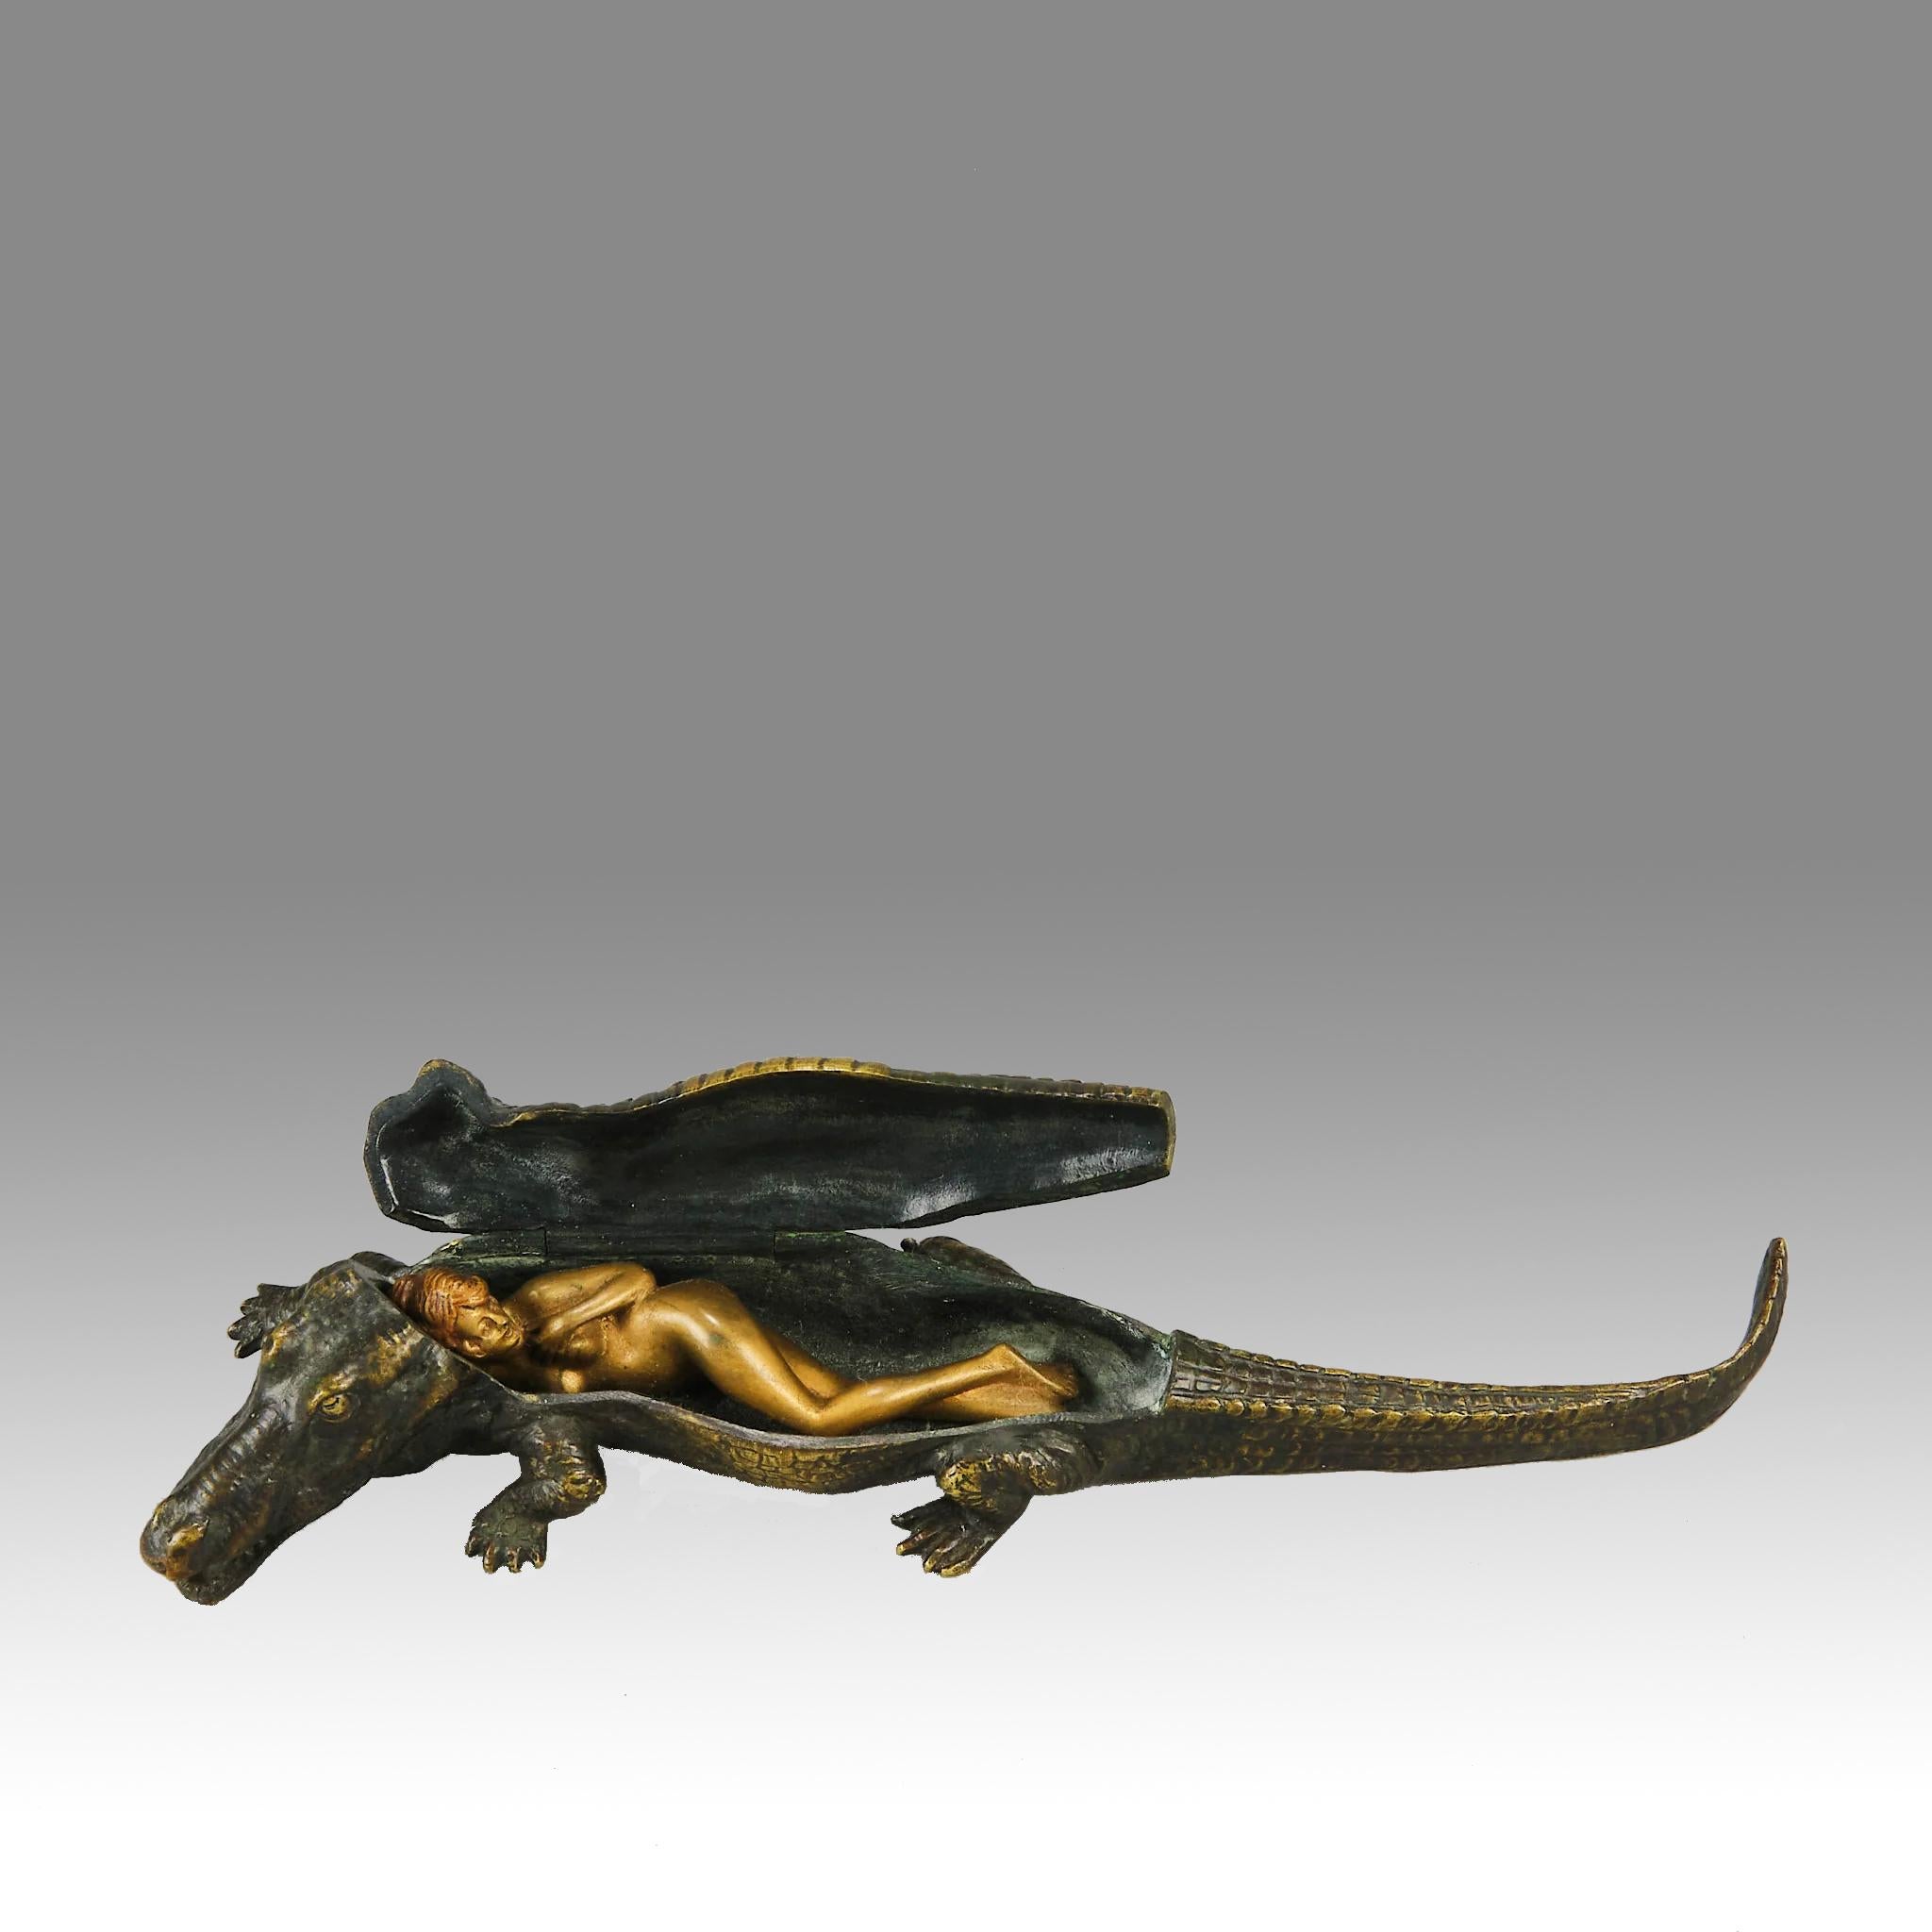 Intéressante étude érotique en bronze autrichien du début du 20e siècle représentant un crocodile marchant. Le dos du crocodile est articulé pour révéler une beauté nue en bronze doré allongée à l'intérieur du reptile, avec des détails et des